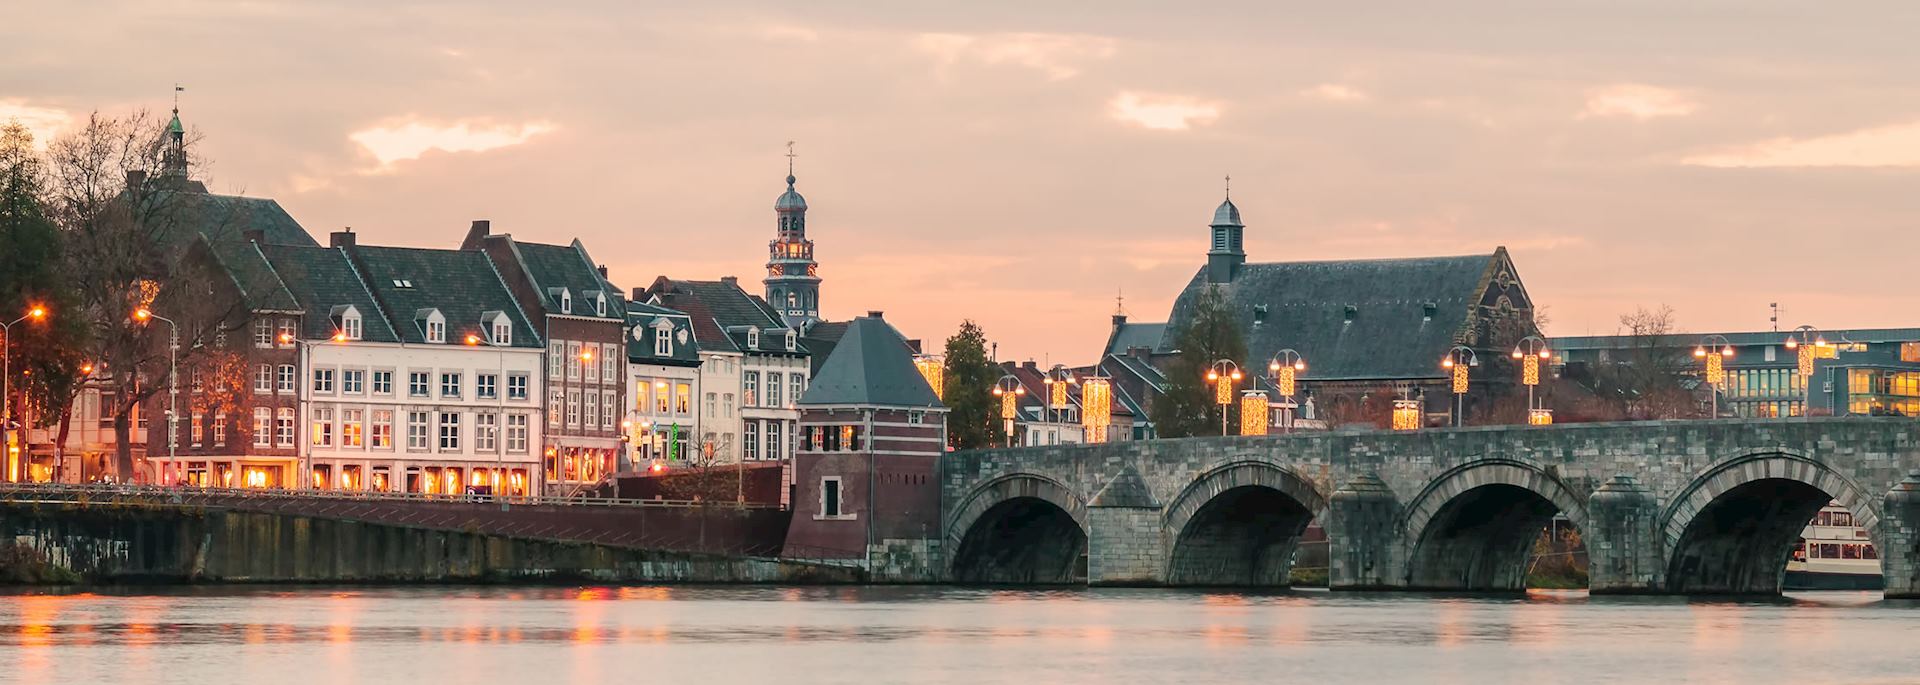 Bridge in Maastricht